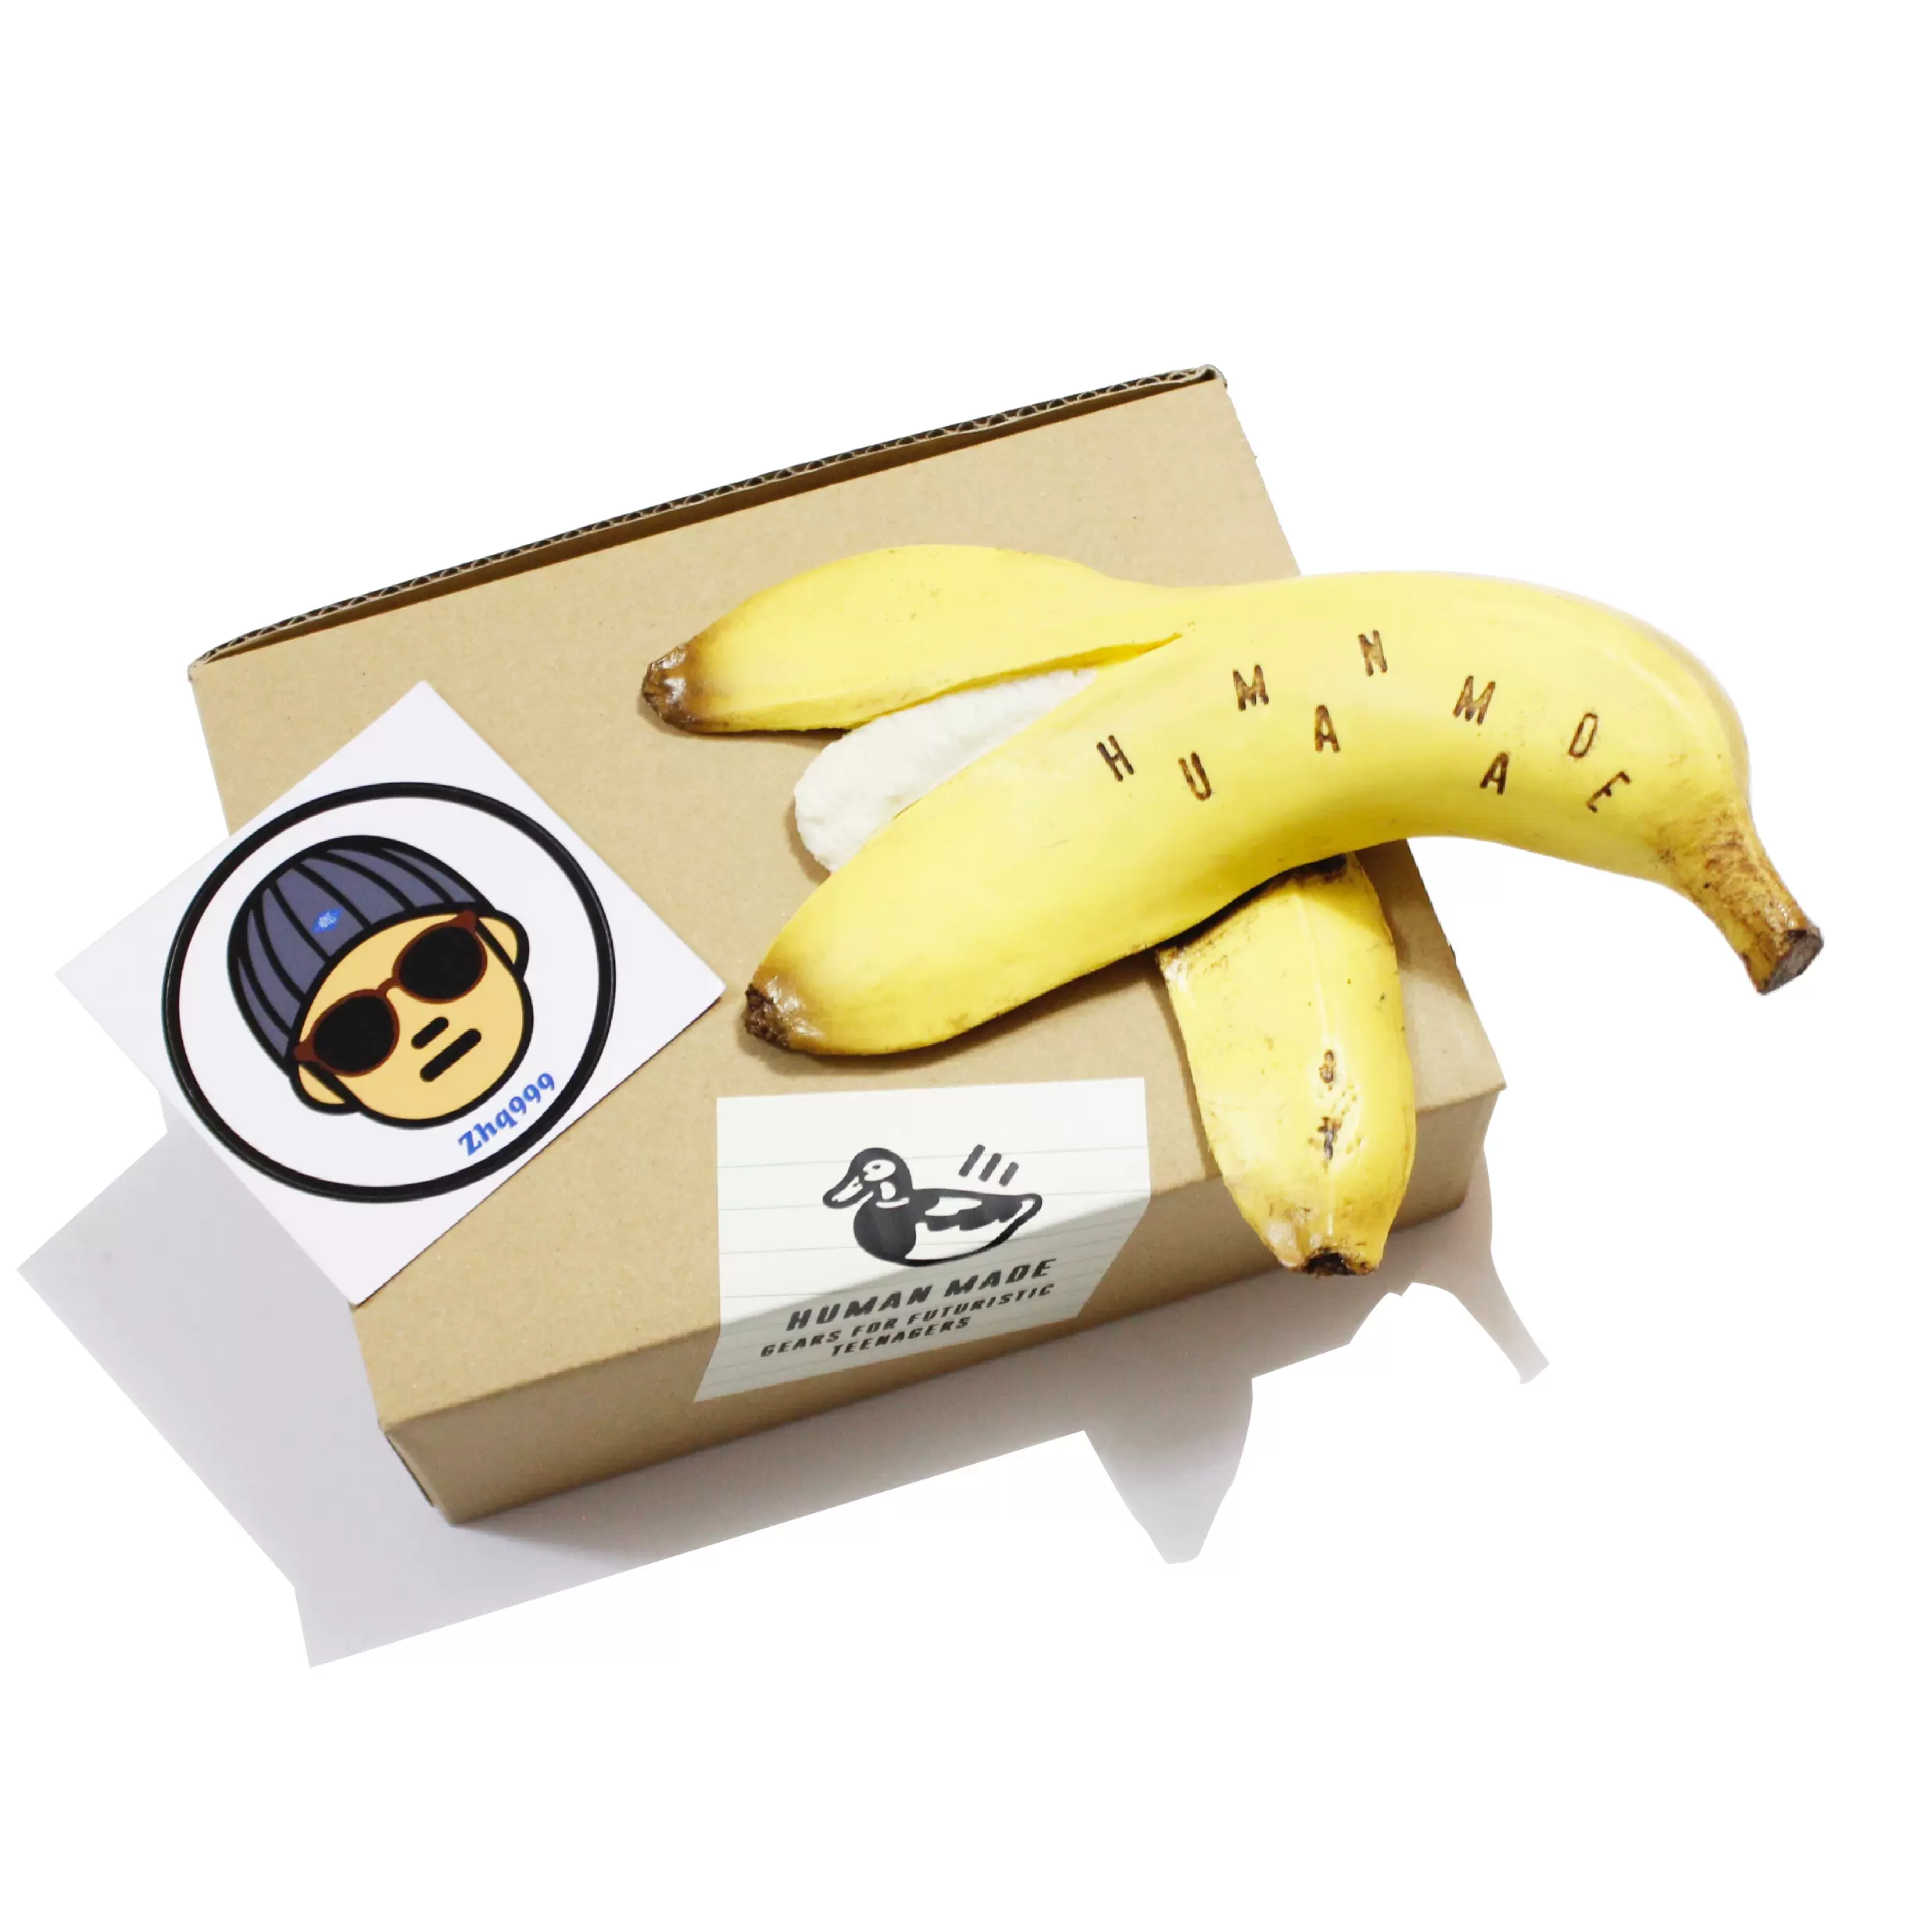 現貨HUMAN MADE BANANA DOOR STOPPER香蕉皮創意門擋擺件21SS-Taobao